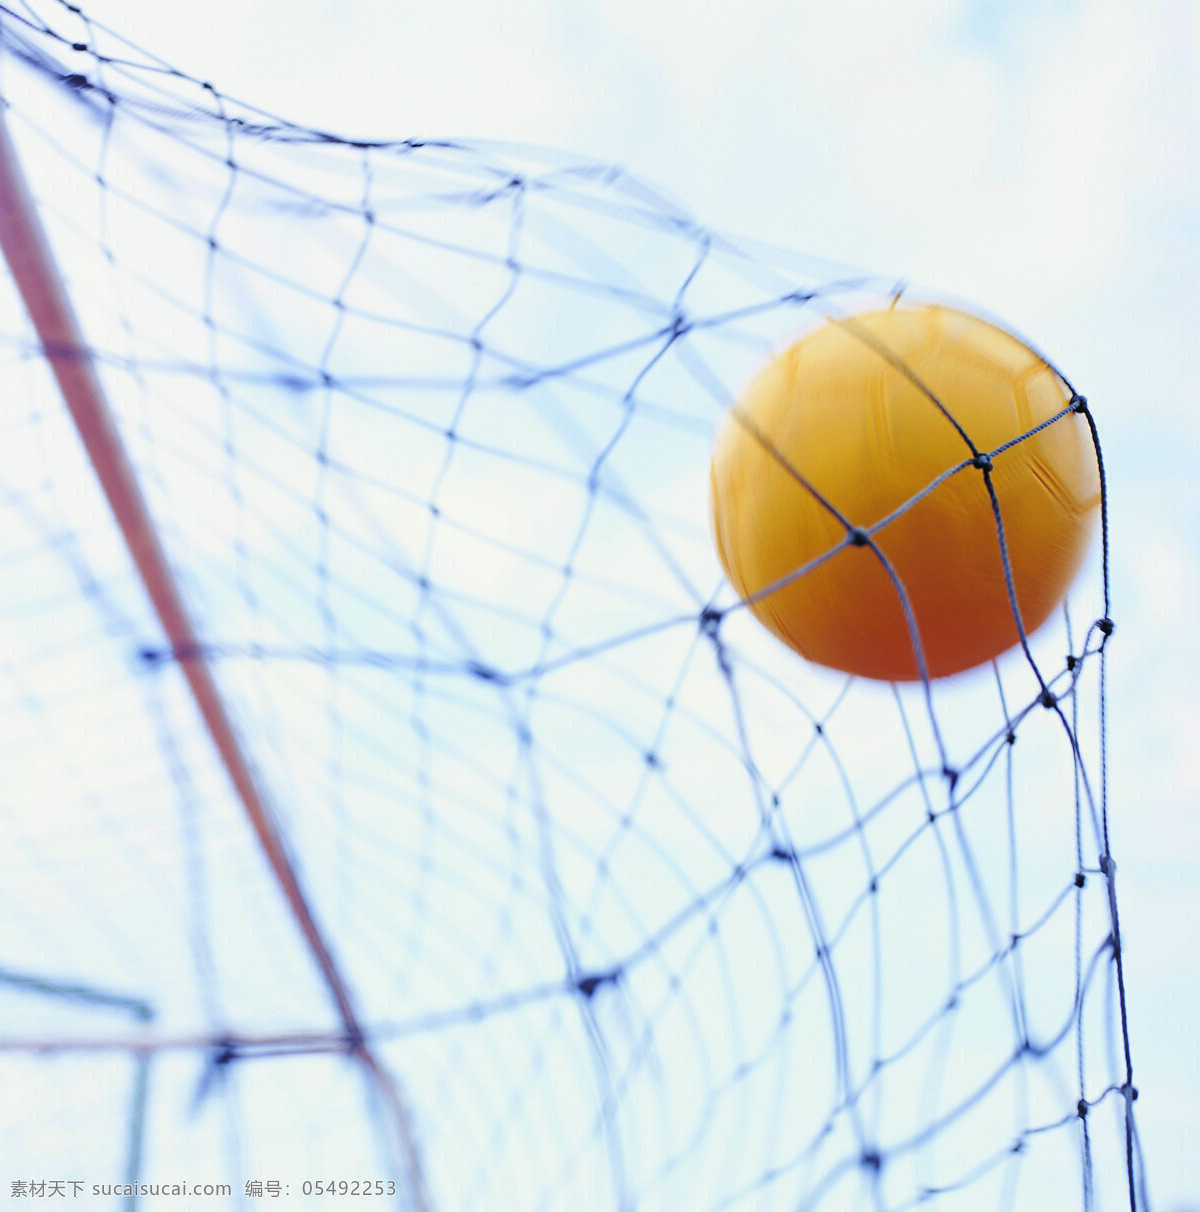 足球 入球 精彩一刻 运动 瞬间 文化艺术 体育运动 摄影图库